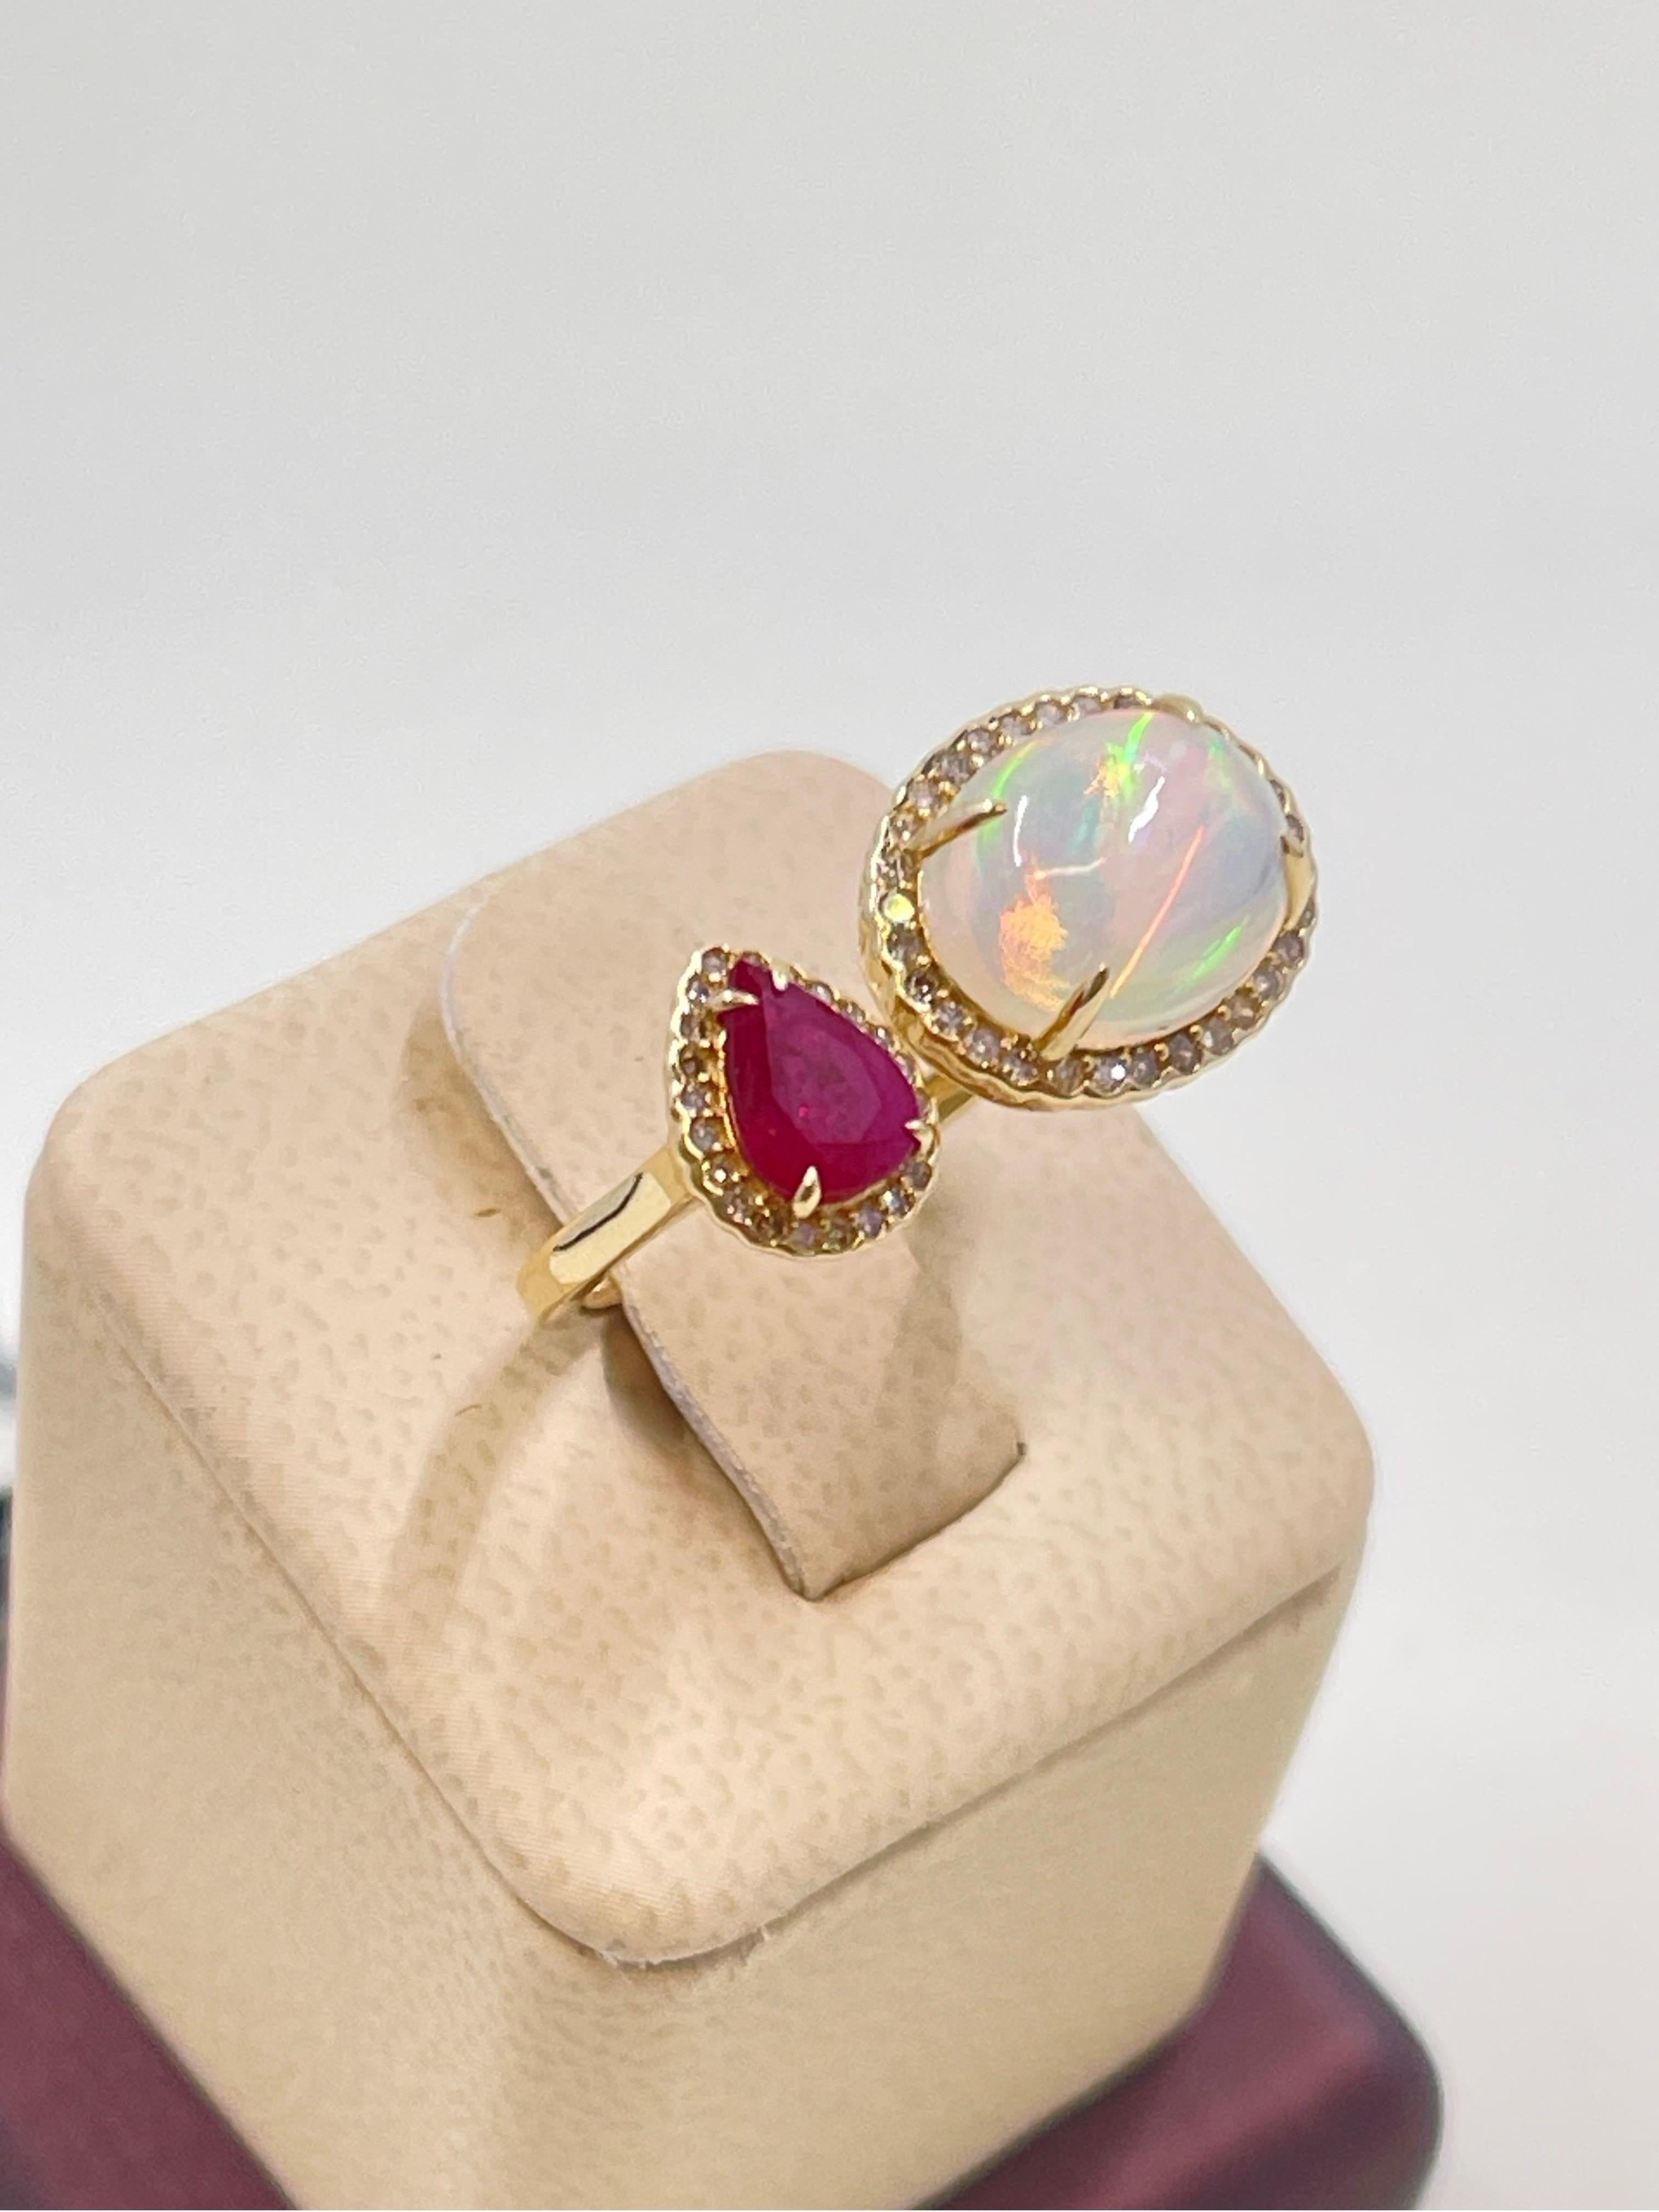 Atemberaubende Feuer Opal, Rubin & Diamant Ring in 14k Gelbgold.

Opal 2,11 Karat,

Rubin 0,68 Karat,

Diamanten 0,246 Karat

Wunderschöne Ergänzung zu Ihrer Schmucksammlung 💎